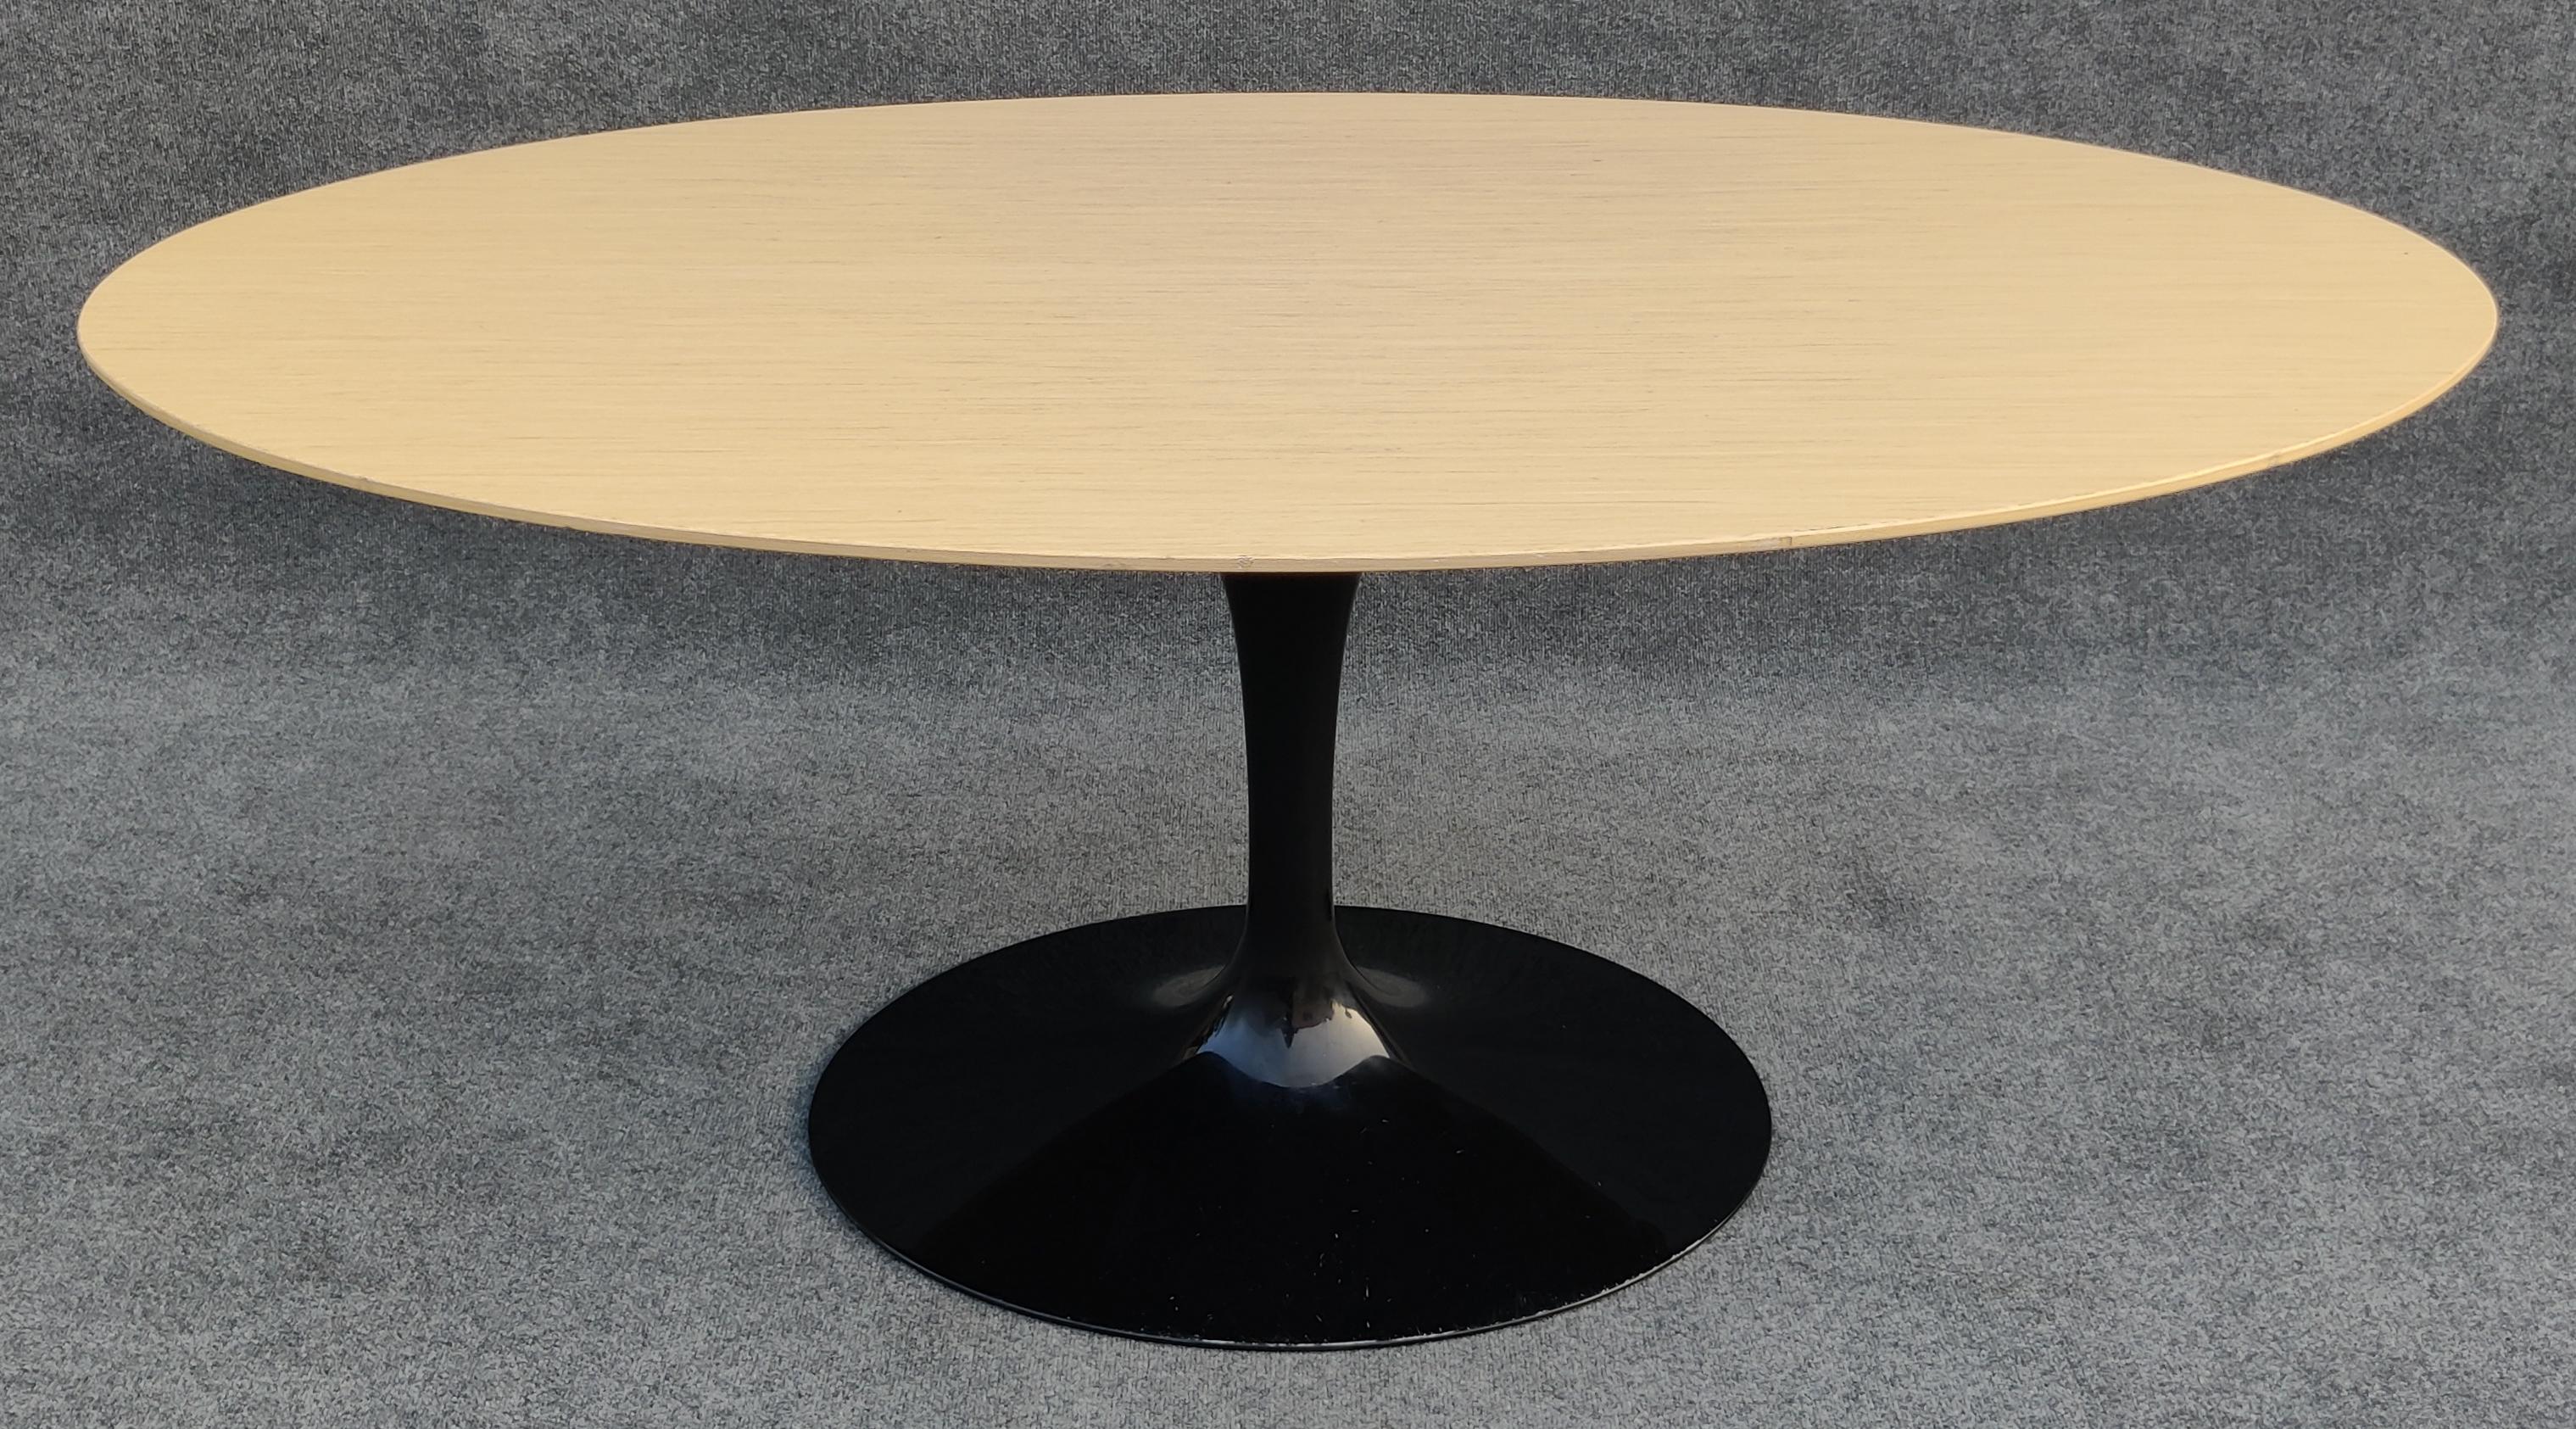 Table de salle à manger ovale Tulip en bois blond signée et datée Eero Saarinen pour Knoll avec base ovale en fonte d'aluminium plastifiée. Cette table a une taille inhabituelle et a probablement été commandée sur mesure. Elle a la taille idéale